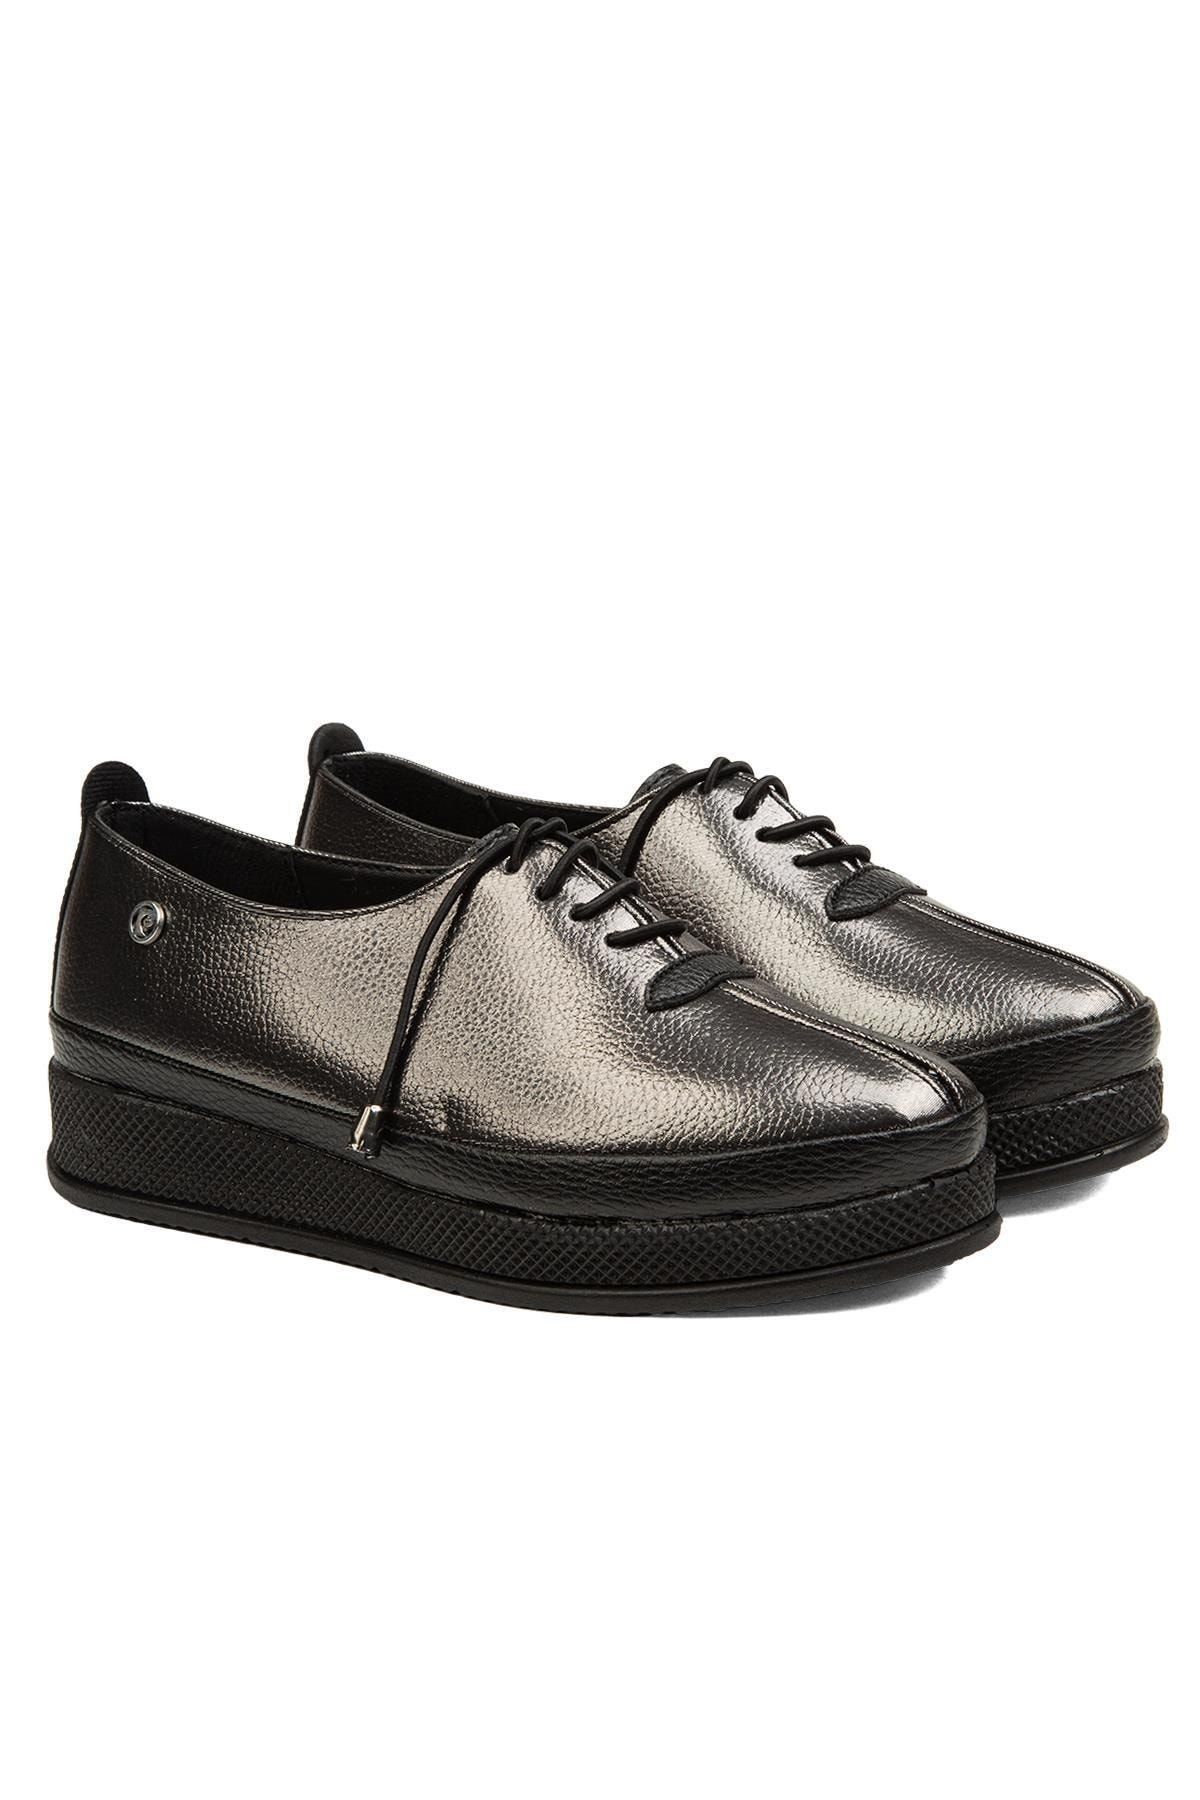 Pierre Cardin ® | Pc-51925-3530 Platin - Kadın Günlük Ayakkabı